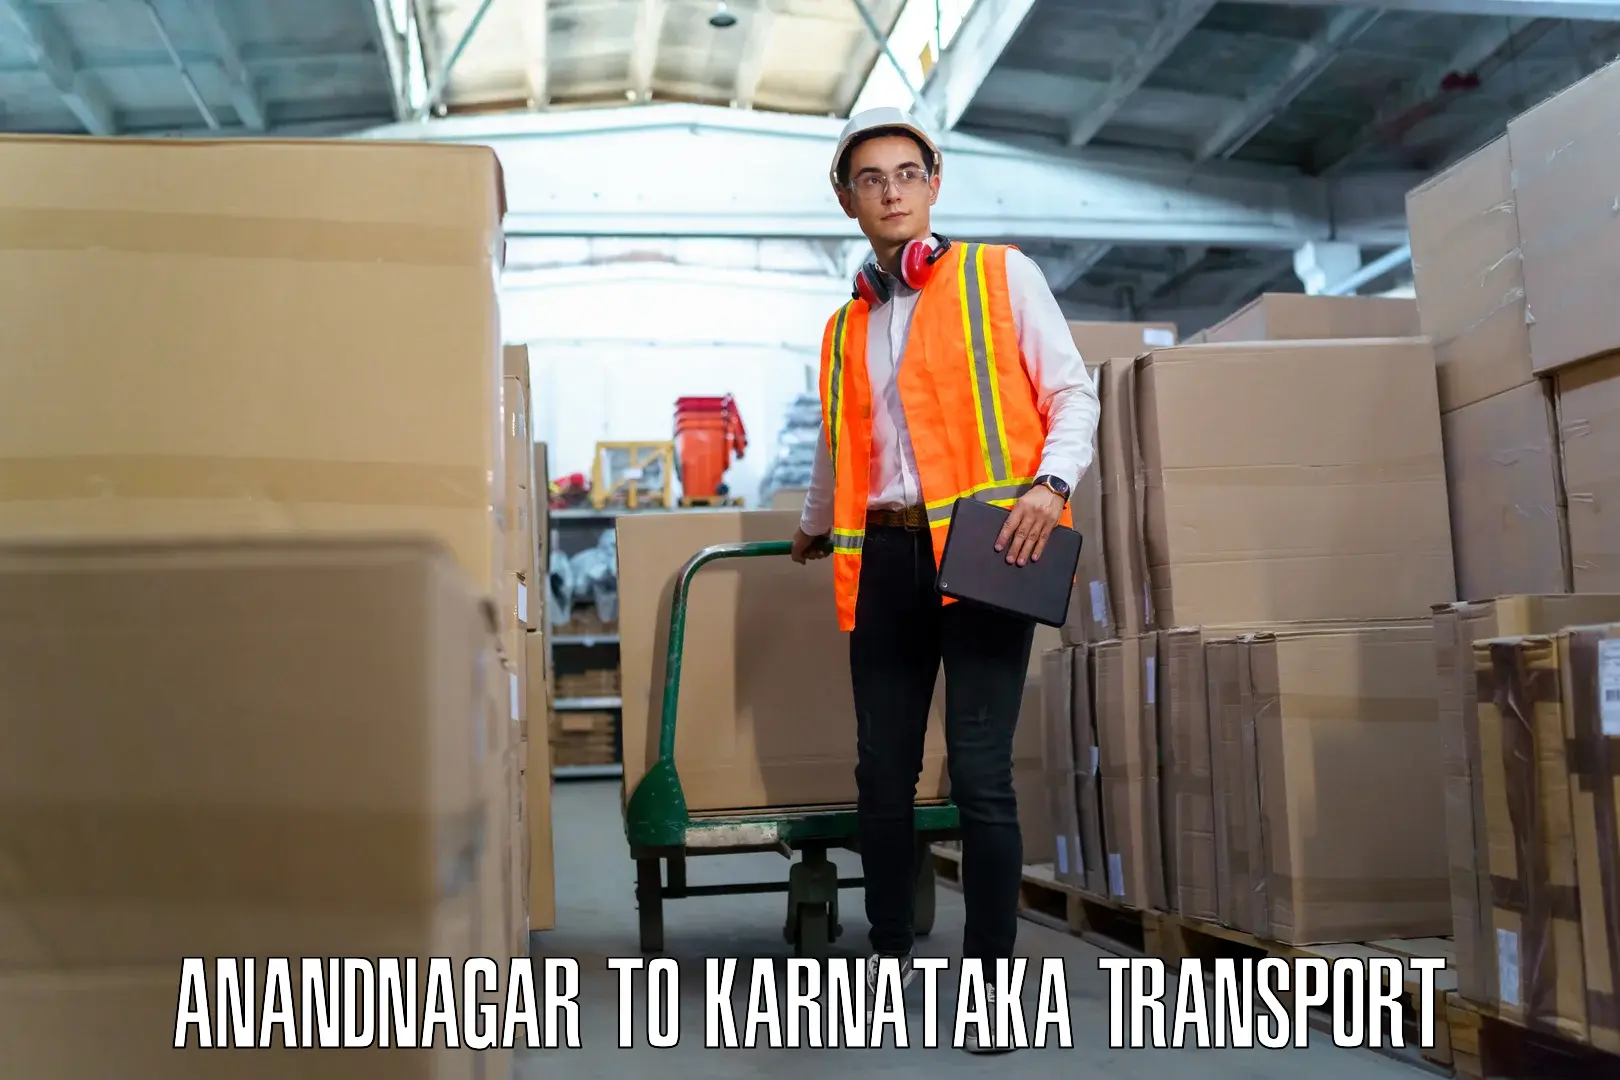 Daily parcel service transport Anandnagar to Toranagallu